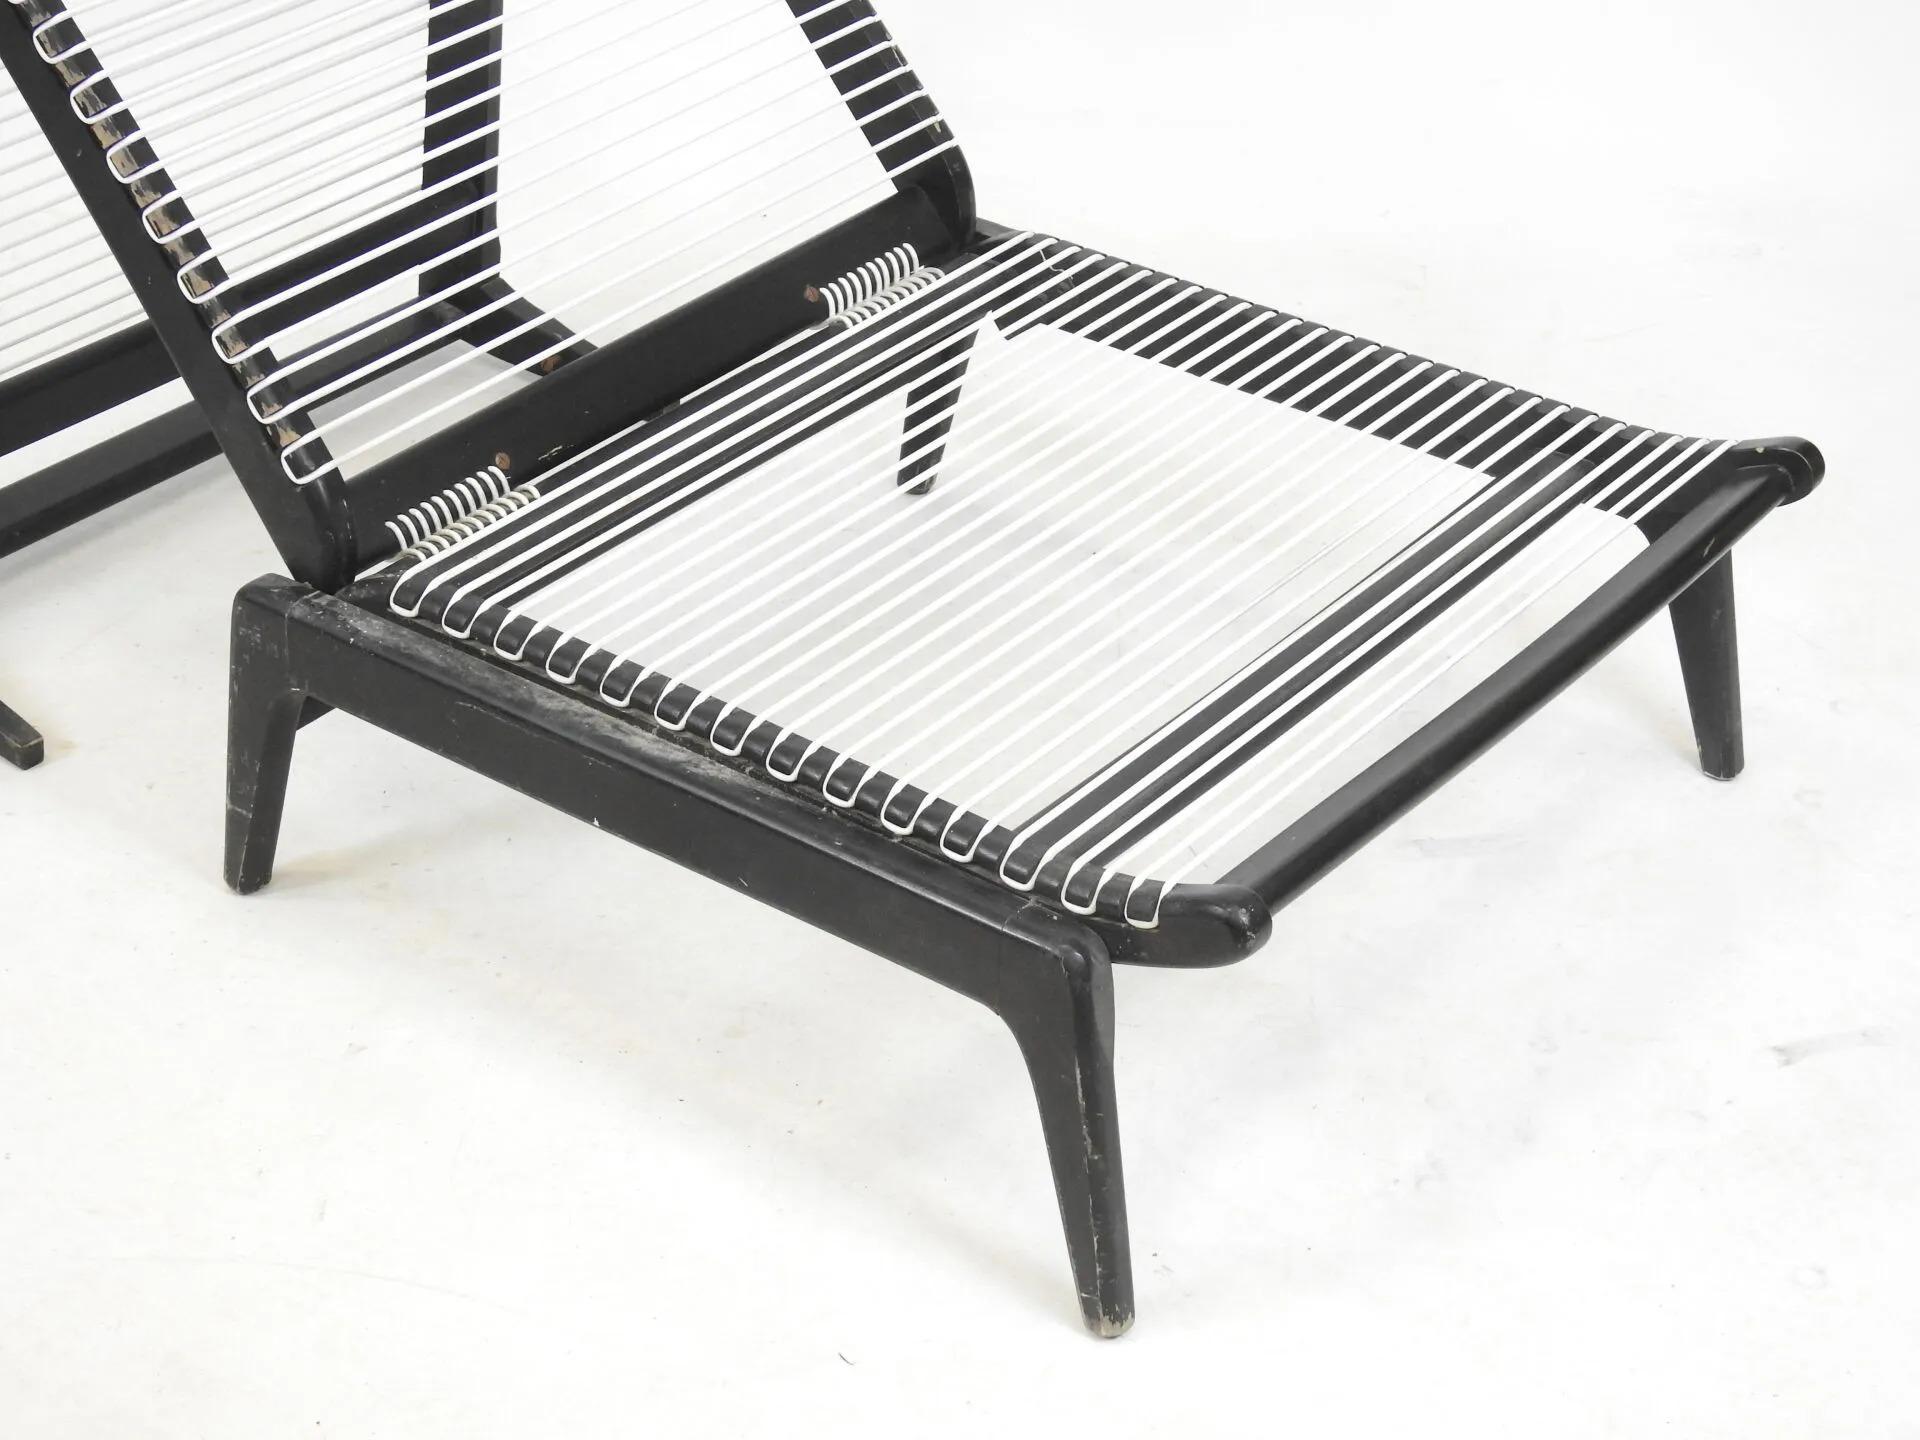 G. TIGIEN fauteuil cabriolet en bois laqué, édition La Maison Europeenne, 1964.
Corde en métal avec plastique blanc.
3 postes :  fauteuil, chaise de cheminée, lit de jour
lit de jour : 10,24 